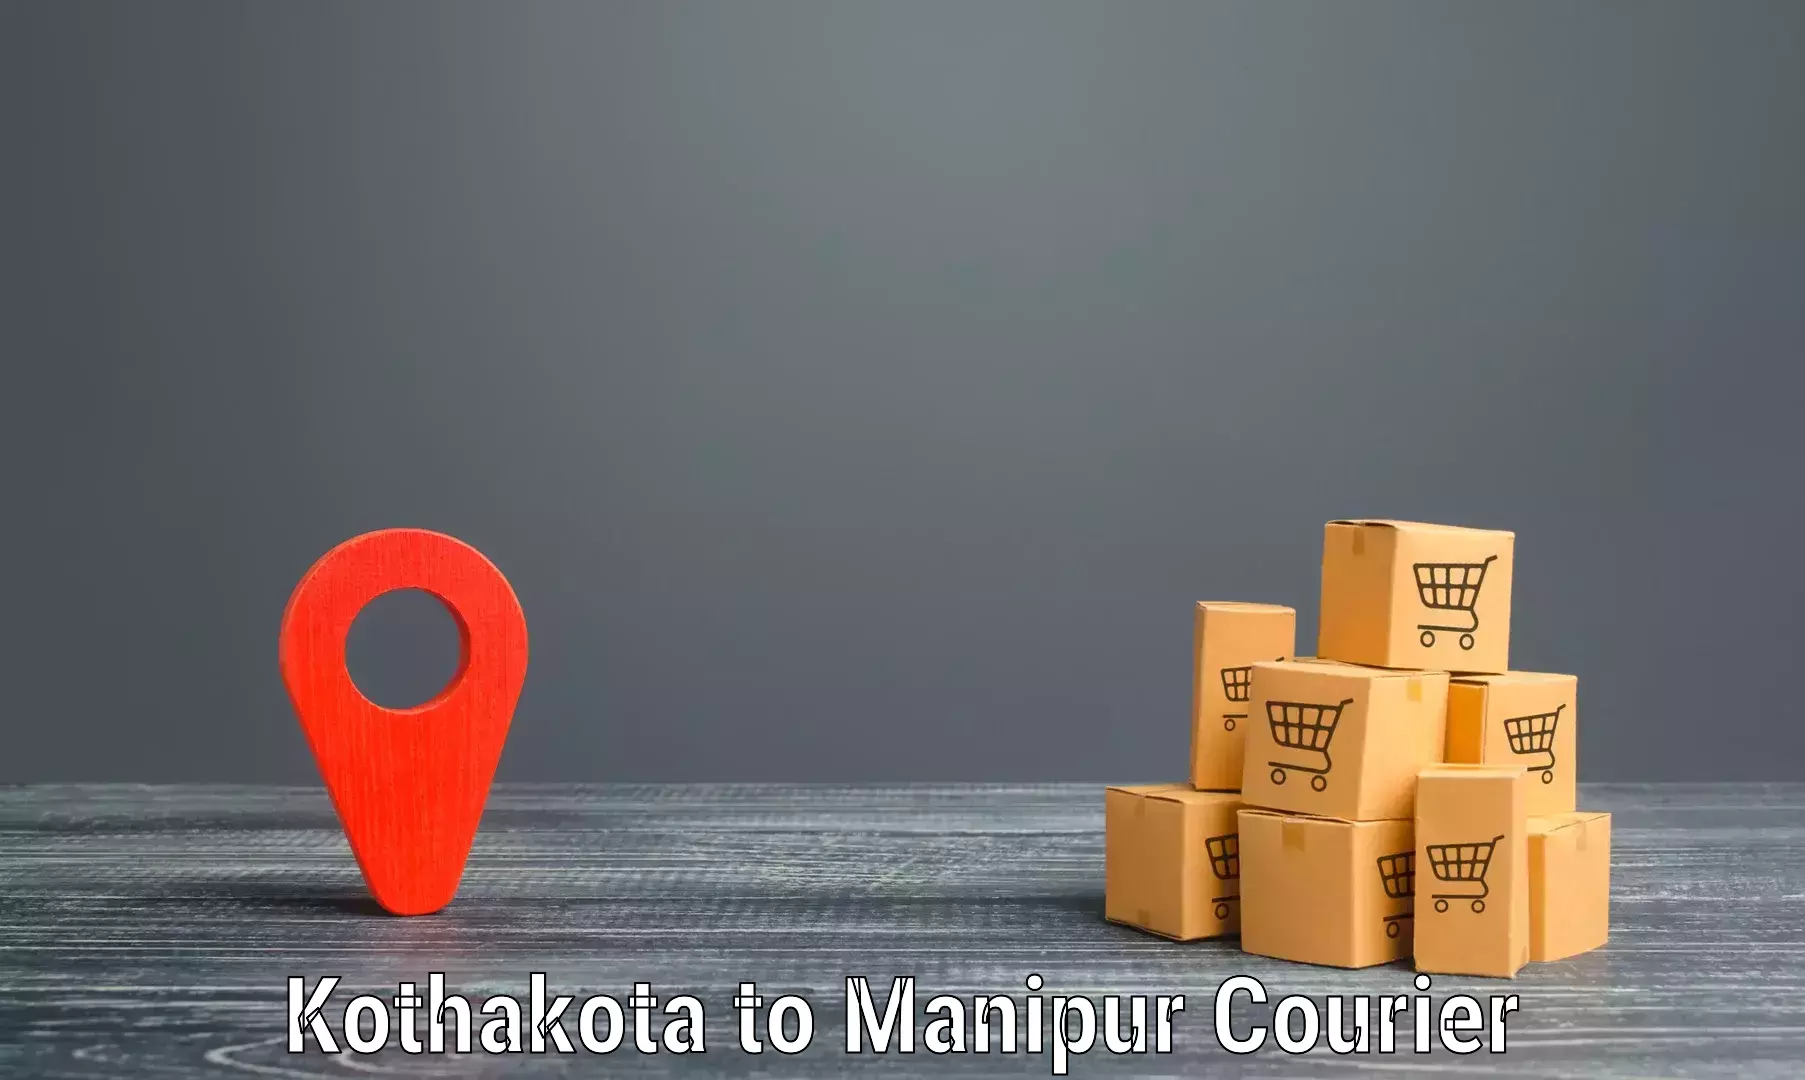 Reliable freight solutions Kothakota to Moirang